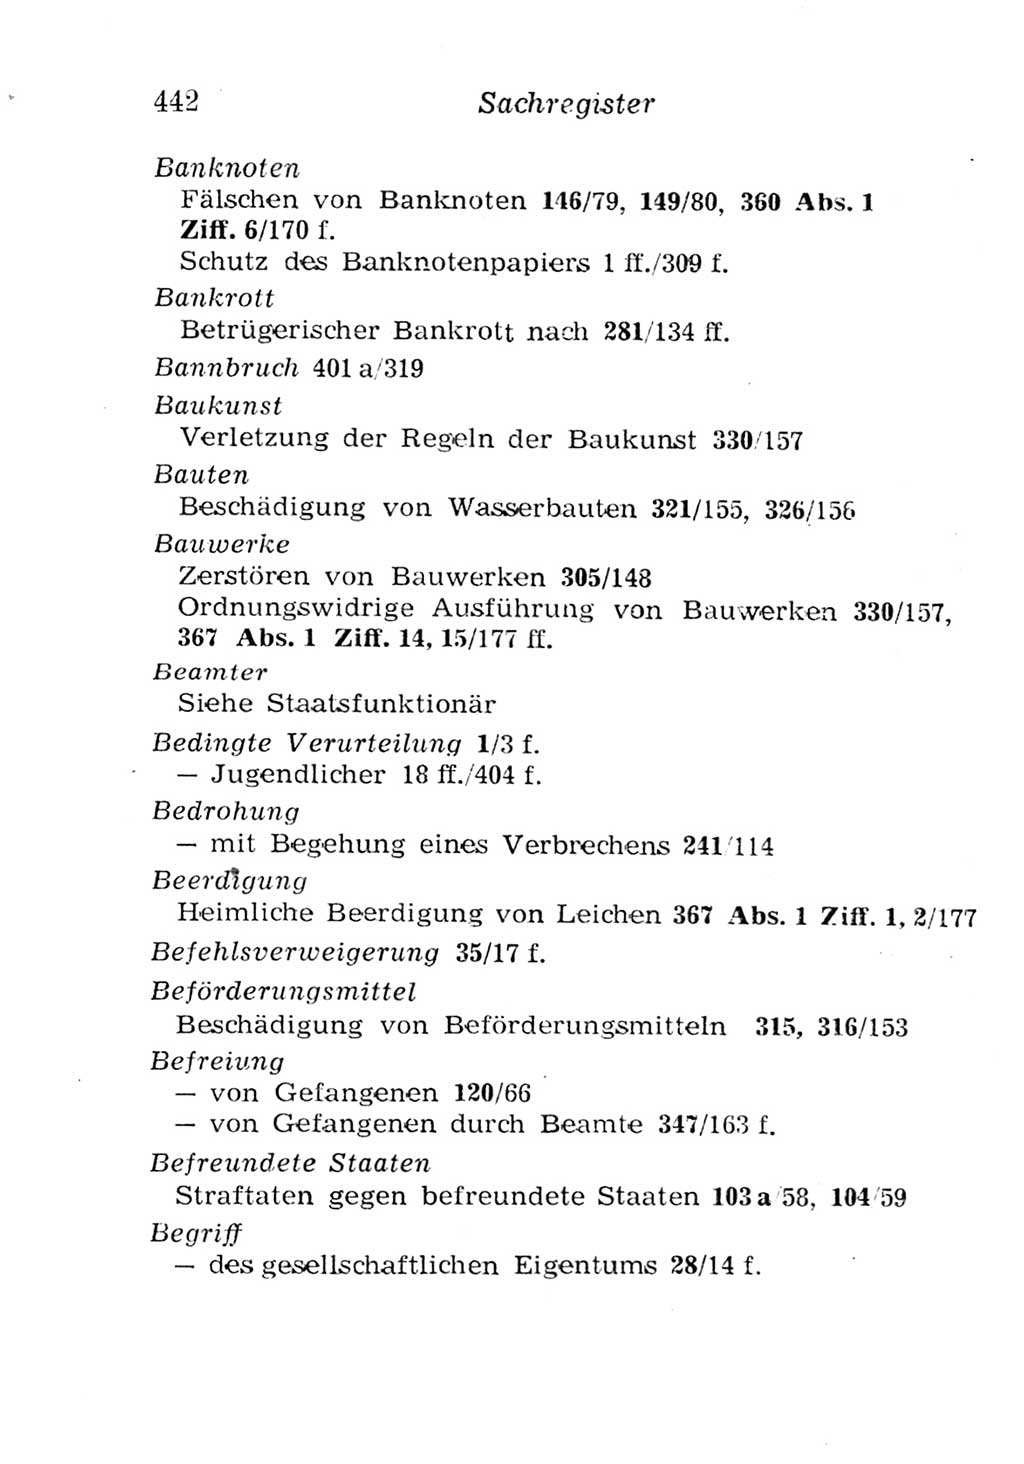 Strafgesetzbuch (StGB) und andere Strafgesetze [Deutsche Demokratische Republik (DDR)] 1957, Seite 442 (StGB Strafges. DDR 1957, S. 442)